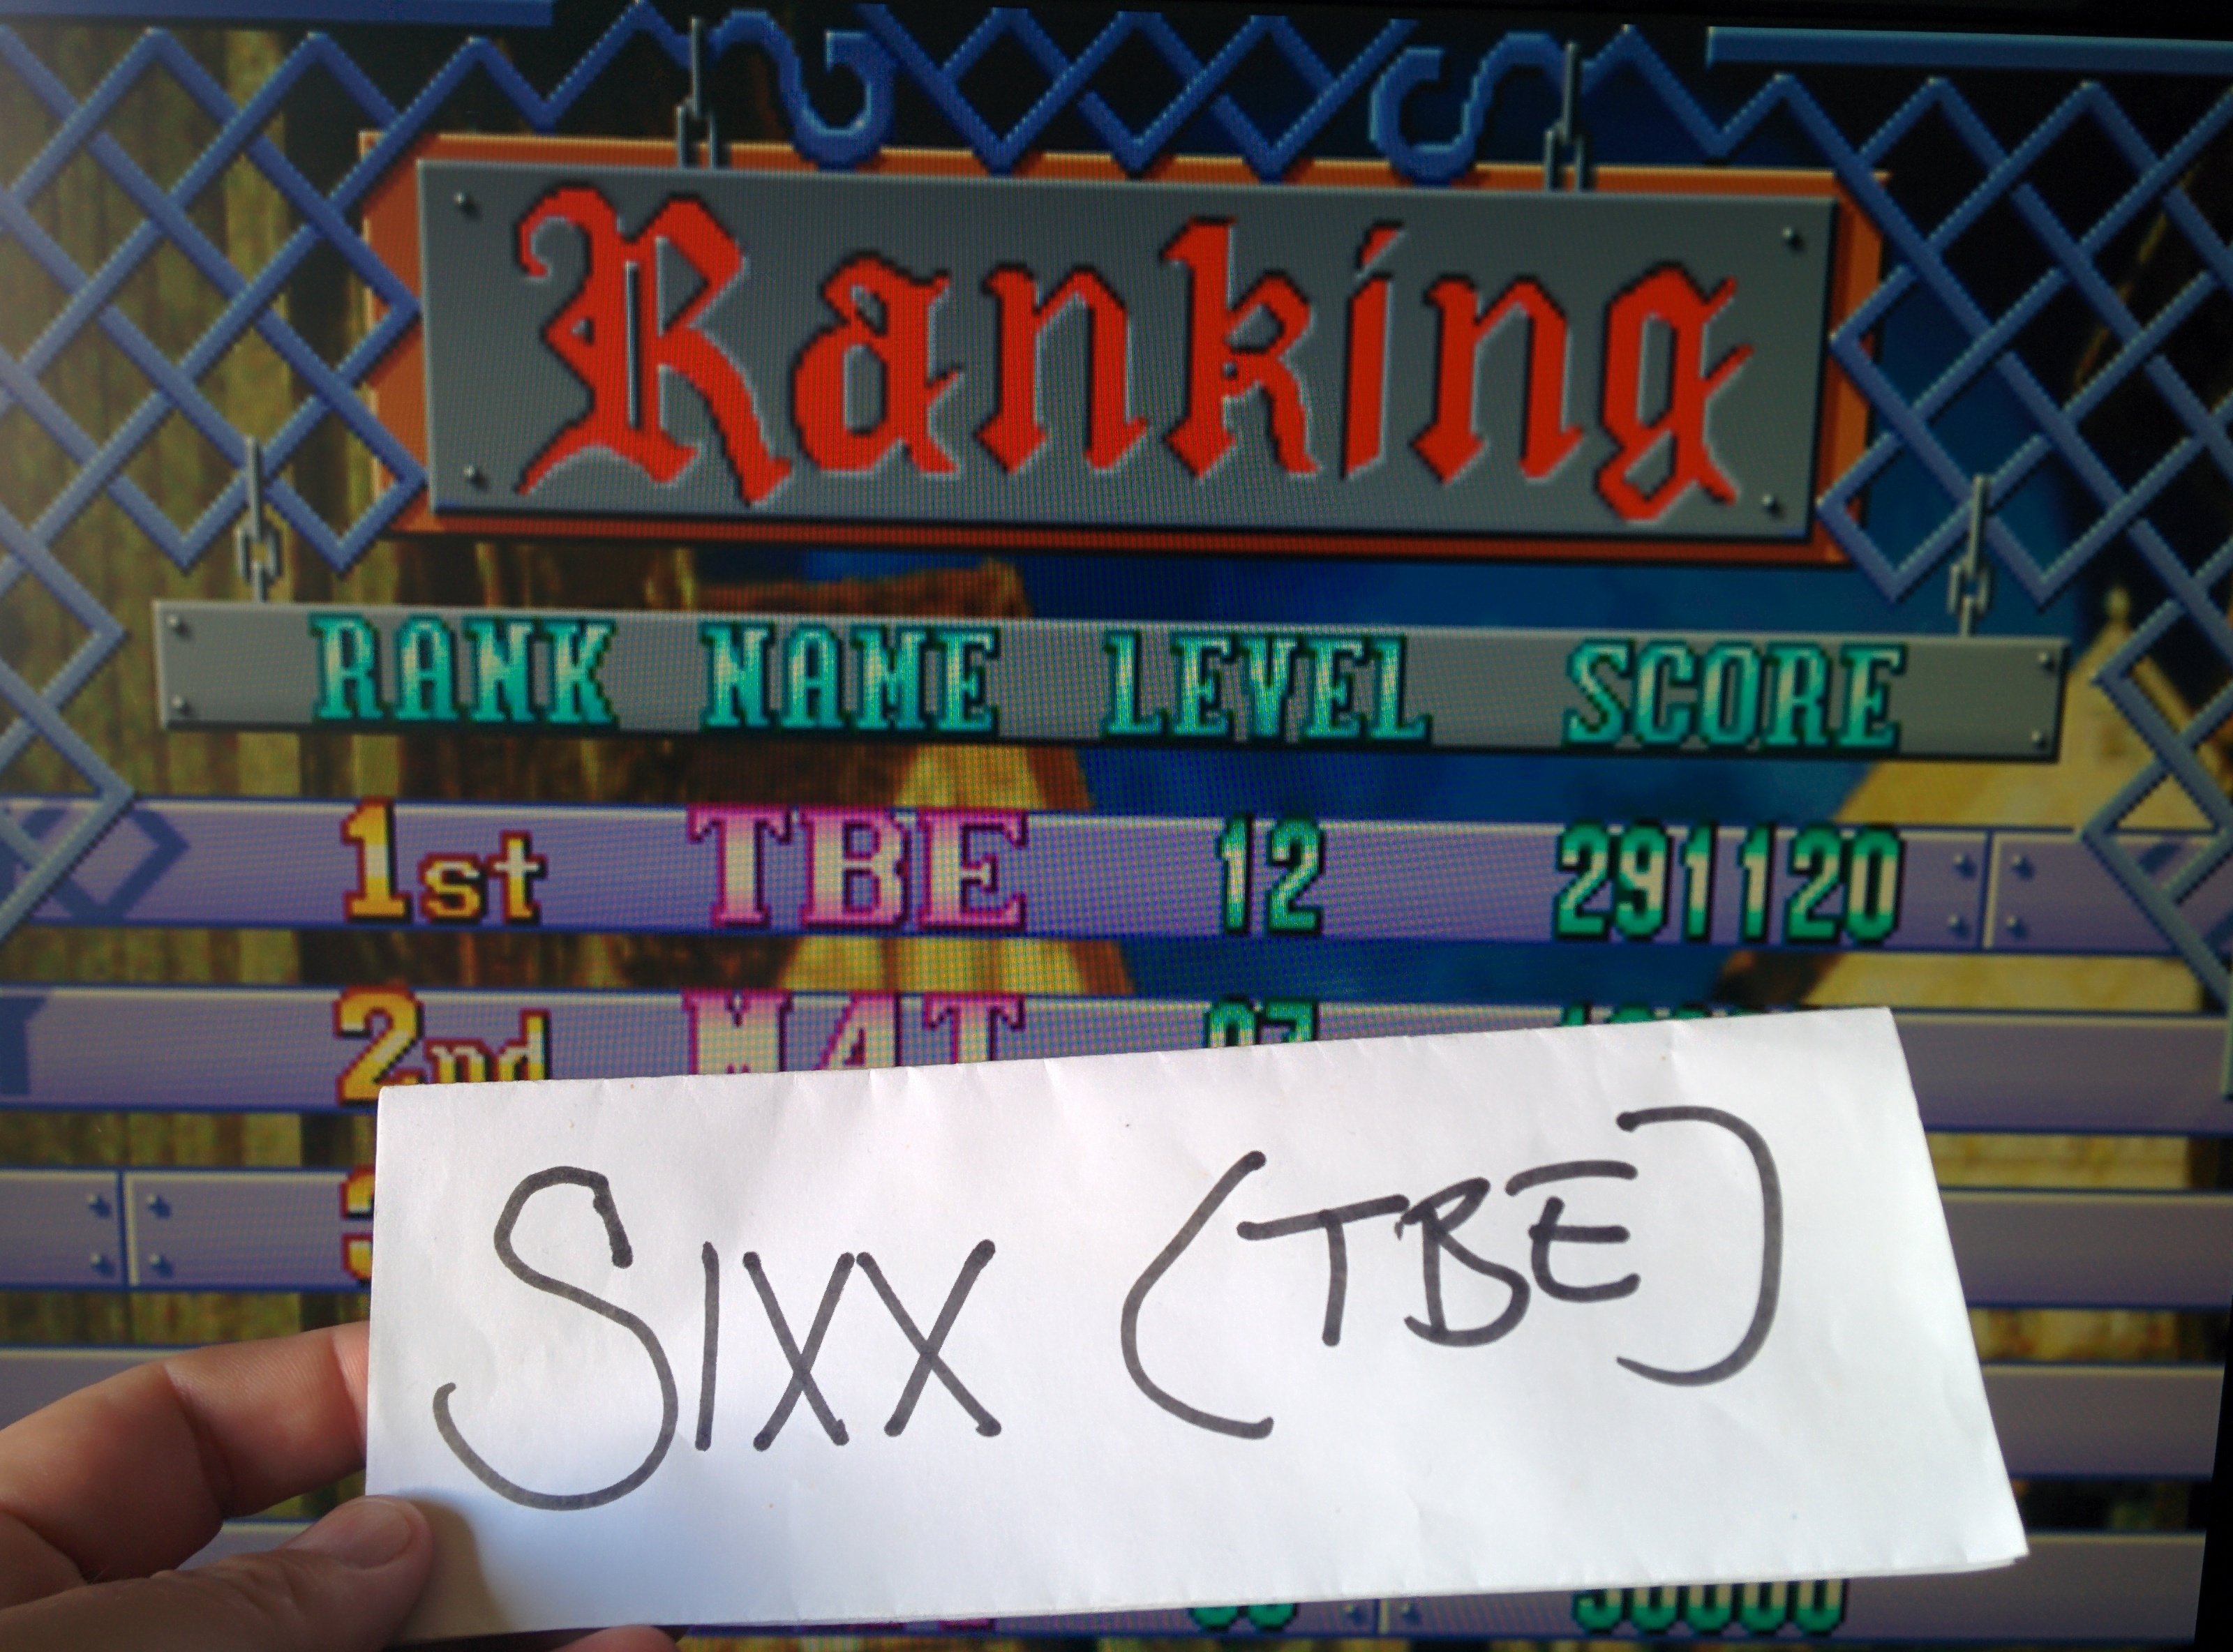 Sixx: Bal Cube (Arcade Emulated / M.A.M.E.) 291,120 points on 2014-08-08 05:34:20